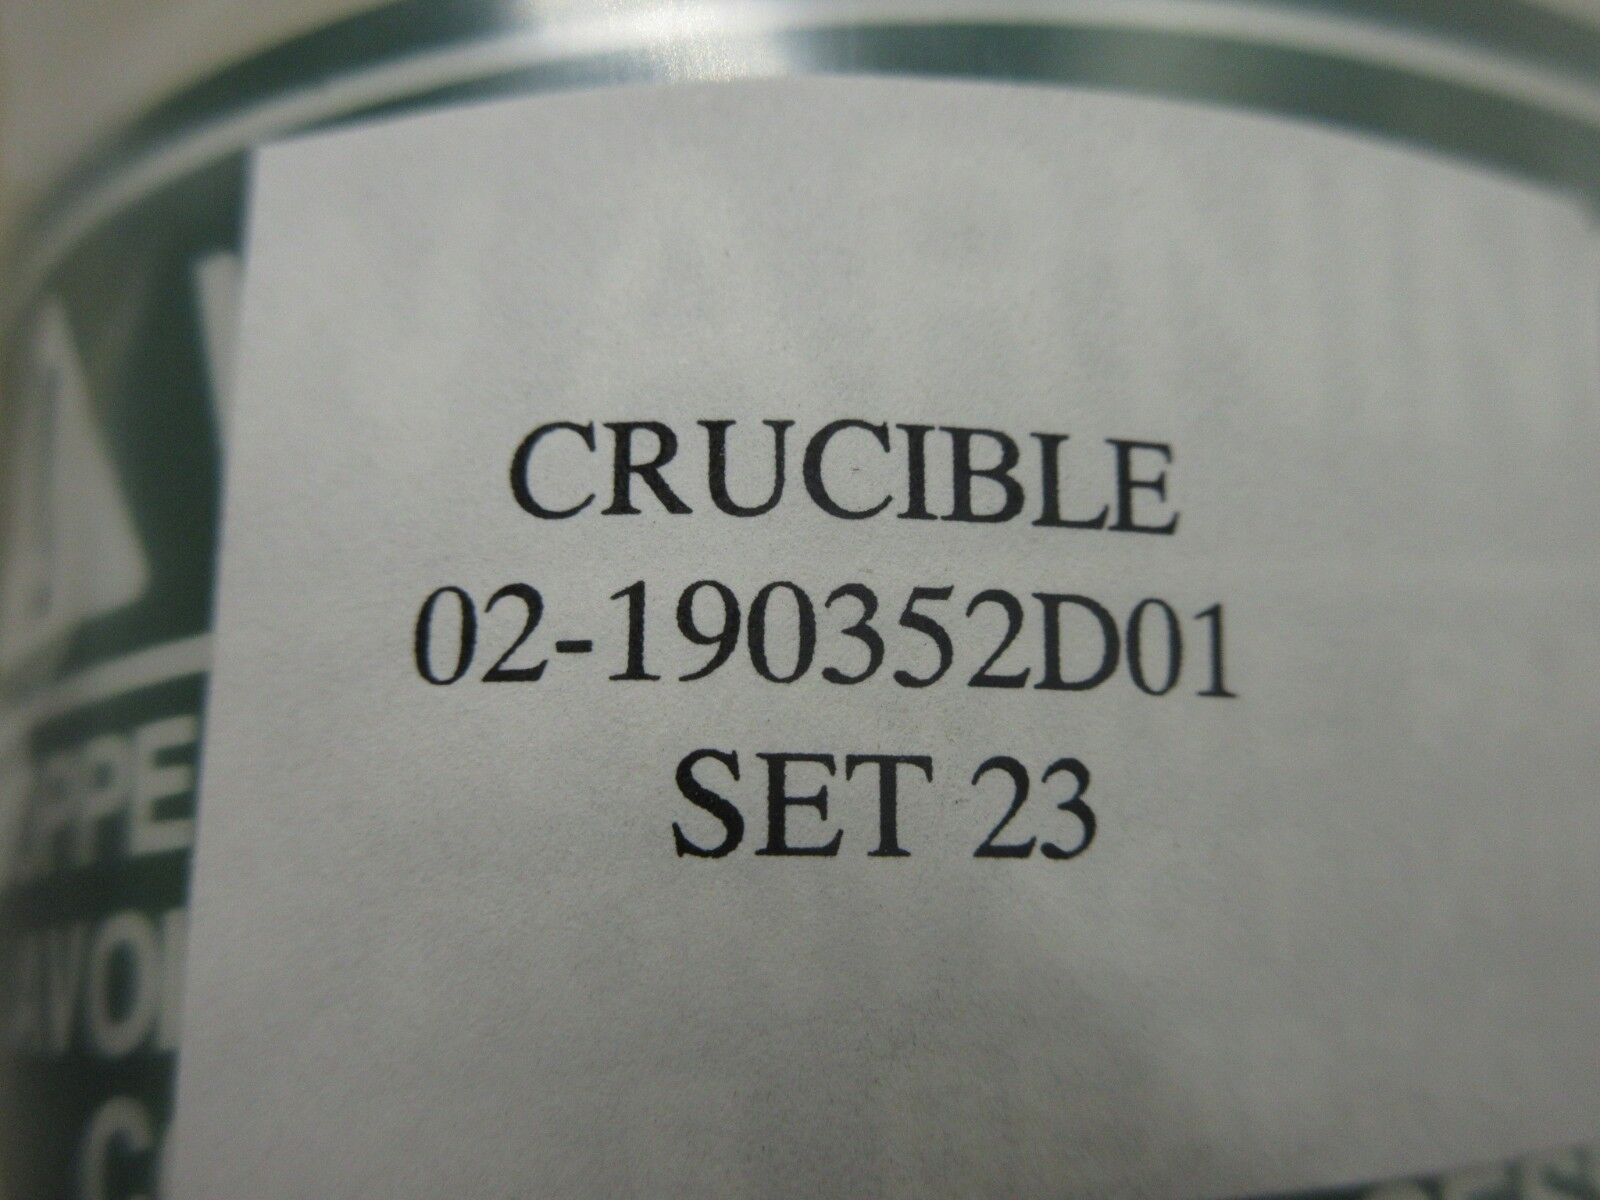 ASM Advanced Semiconductor Materials 02-190352D01 Quartz Crucible Lot of 12 New